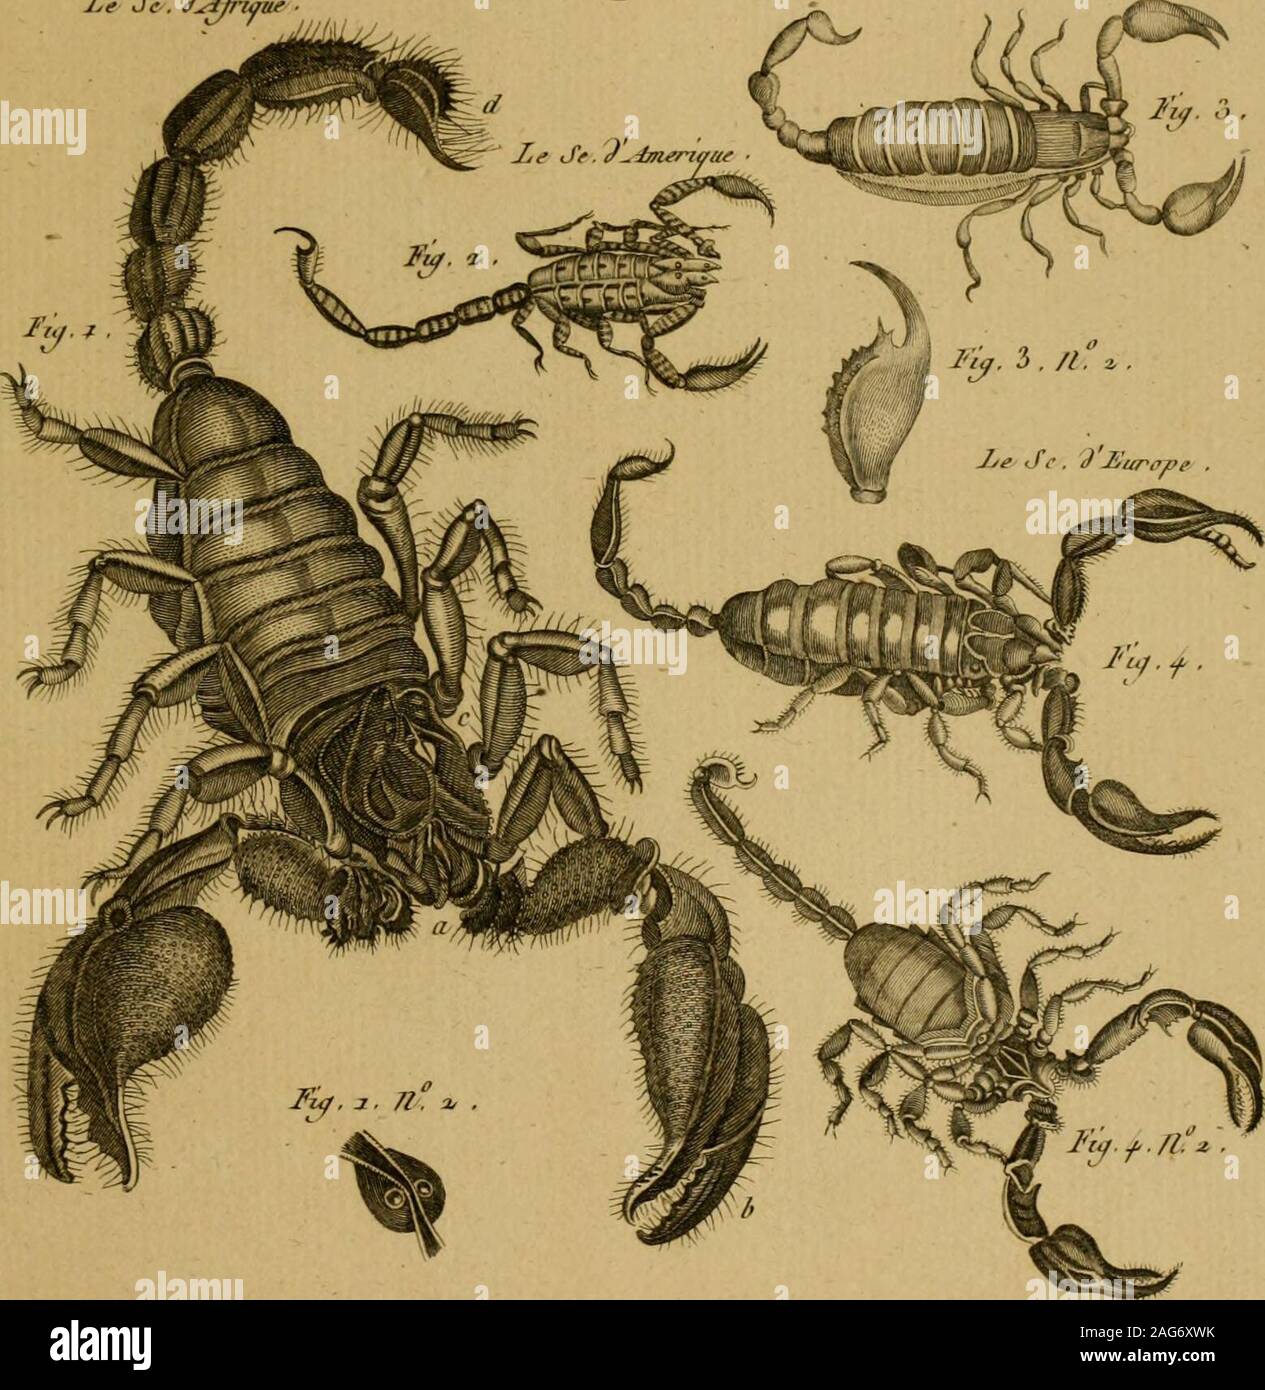 . Encyclopédie méthodique : Histoire naturelle. Le Je. d^Jnaue Scorpion. Jye J-. //lattre ,. Ihsloire /lah// ^e/Ze, Jno^erMn Jiffurd I&gt;trejcil. Pil ri.:2G:). Stock Photo